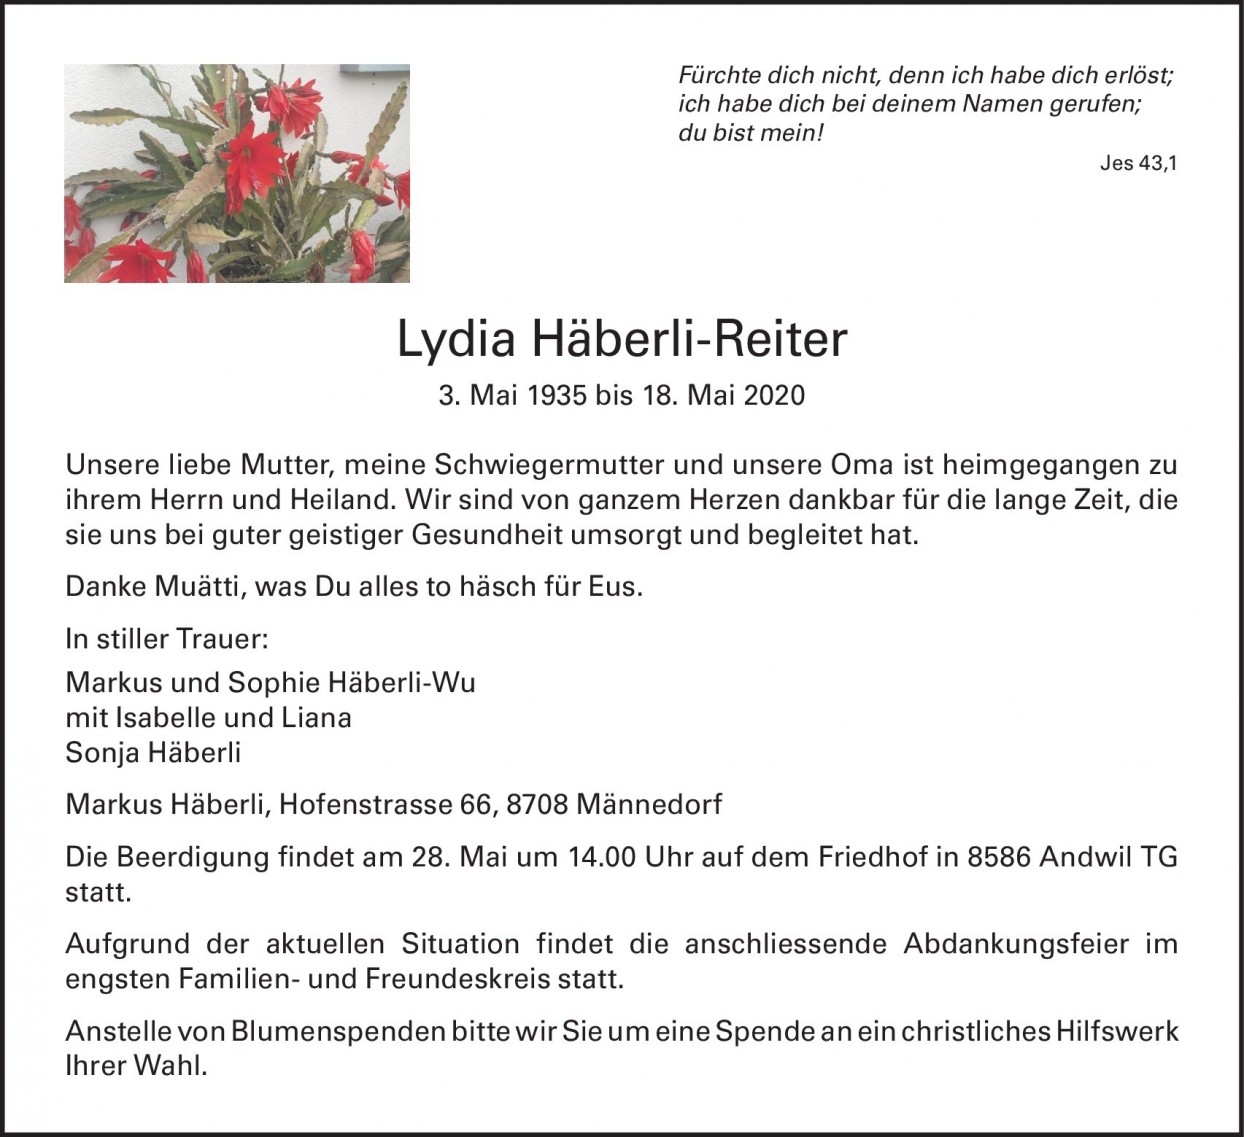 Lydia Häberli-Reiter